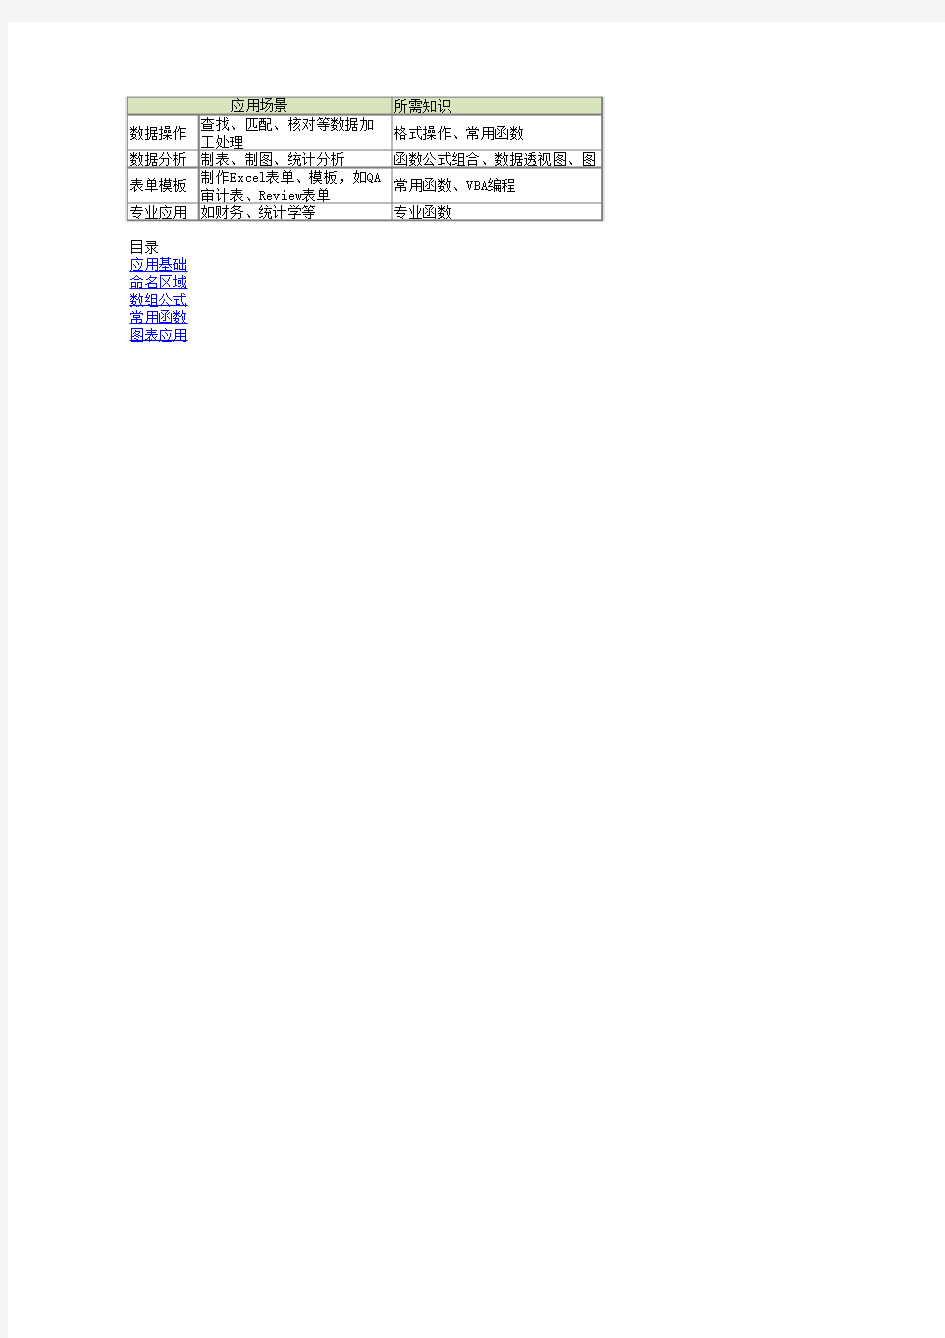 Excel函数应用实例(数组公式、二级列表等)